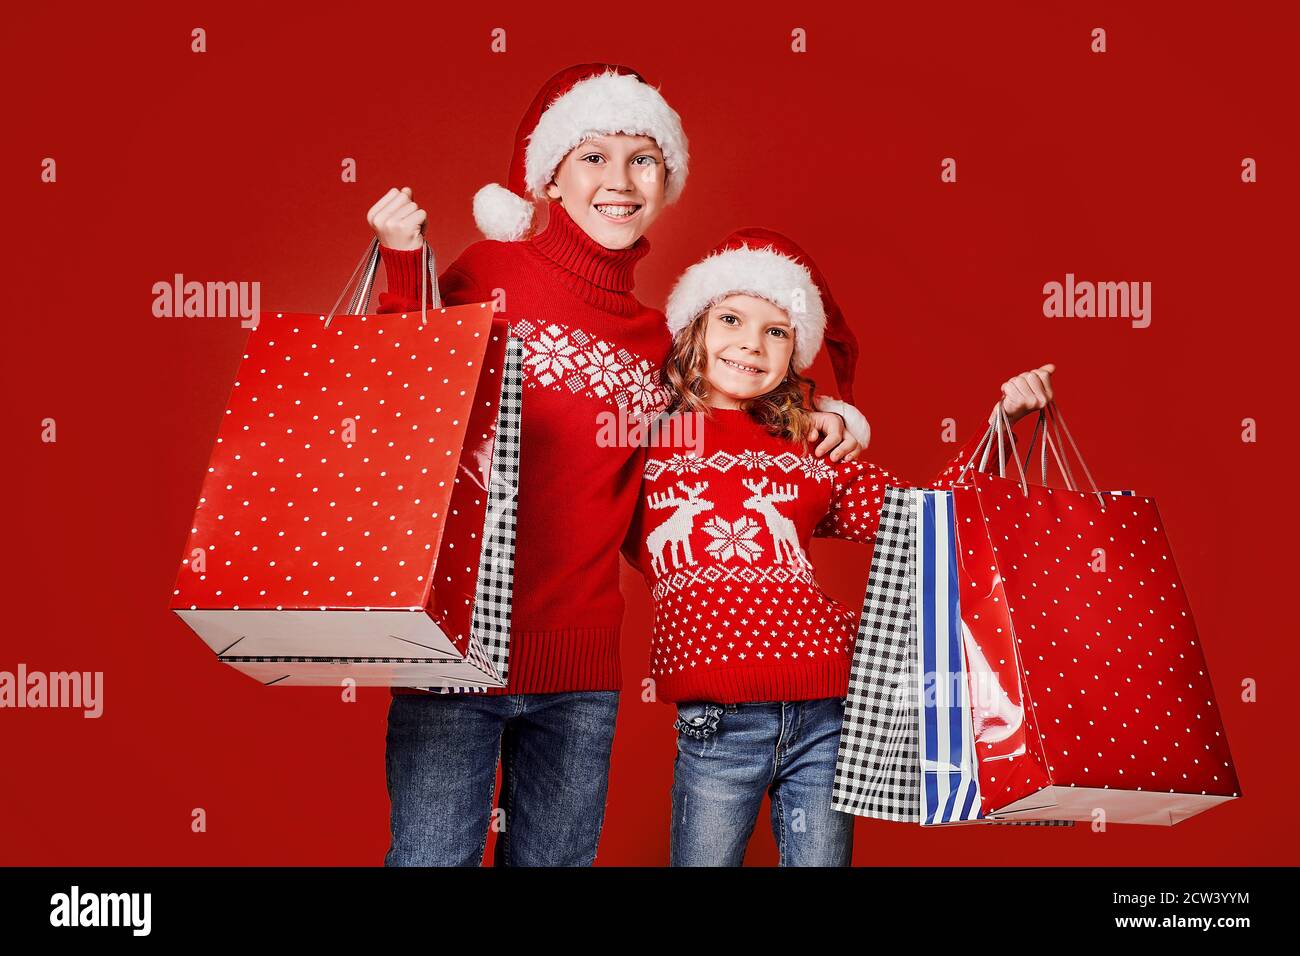 Cute bambini in rosso Santa cappelli, maglioni che tengono borse shopping su sfondo rosso. Foto Stock